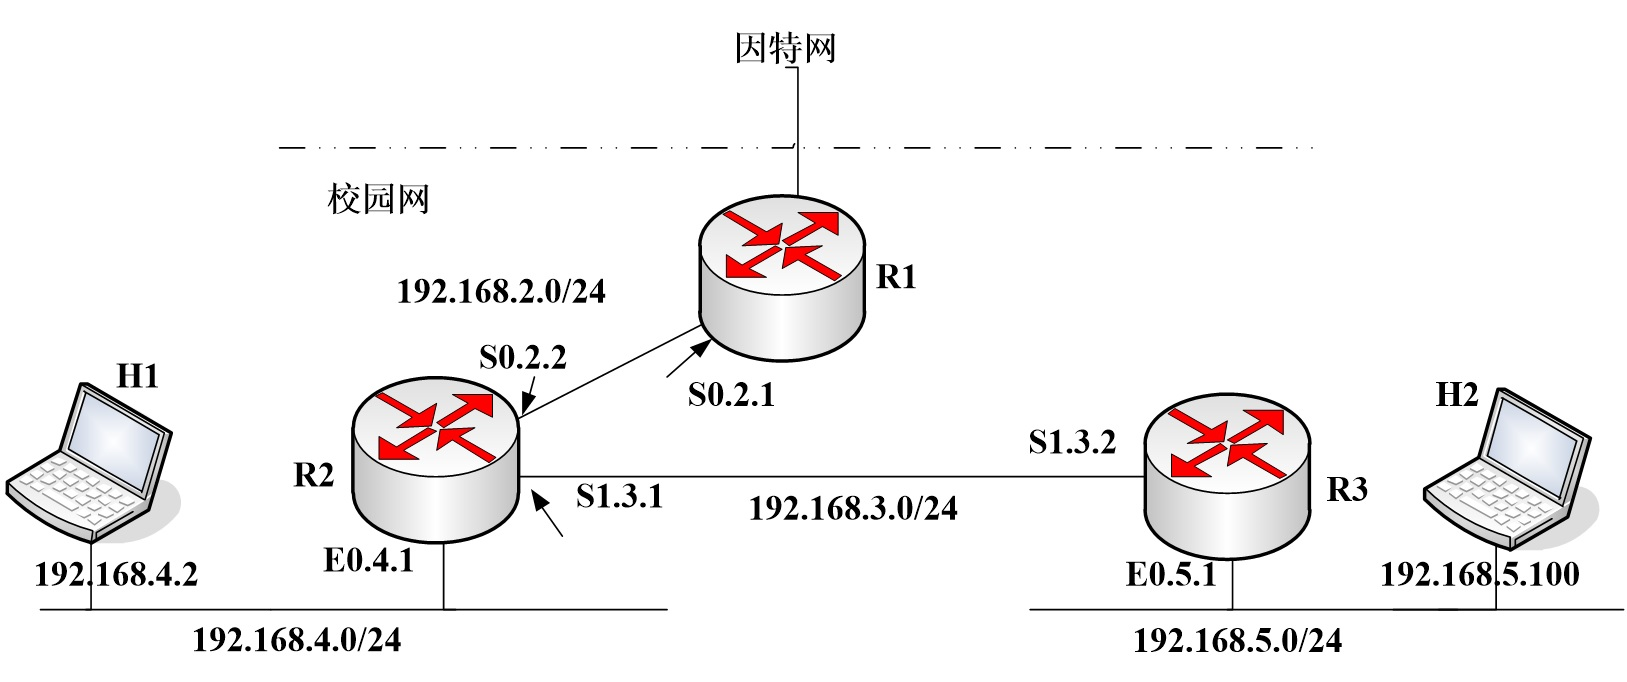 利用三台路由器组建校园网，当前的网络连接拓扑如题图所示。已知路由器R2的E0.4.1接口配置的IP地